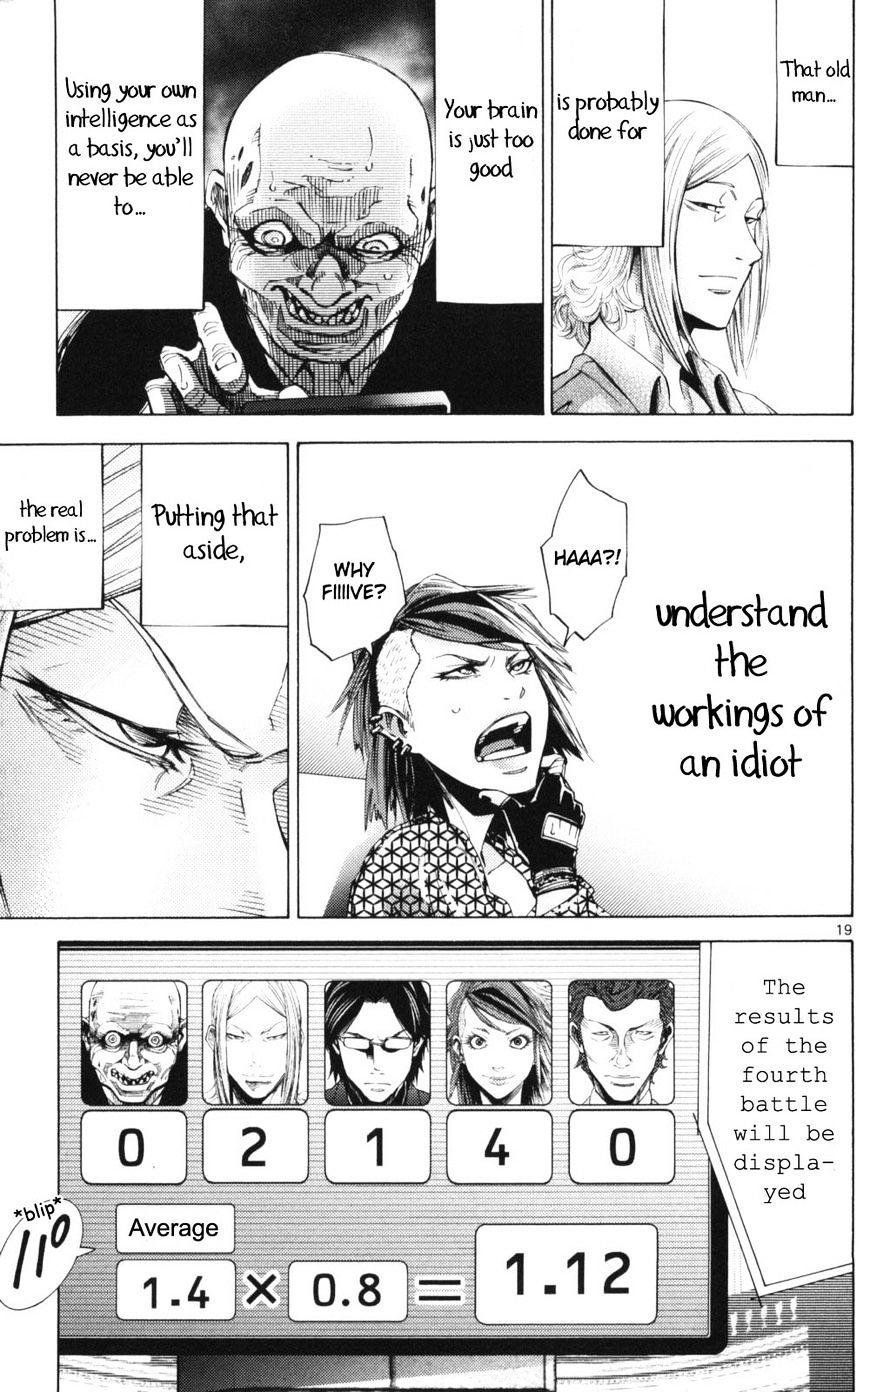 Imawa No Kuni No Alice Chapter 51.2 : Side Story 6 - King Of Diamonds (2) page 19 - Mangakakalot